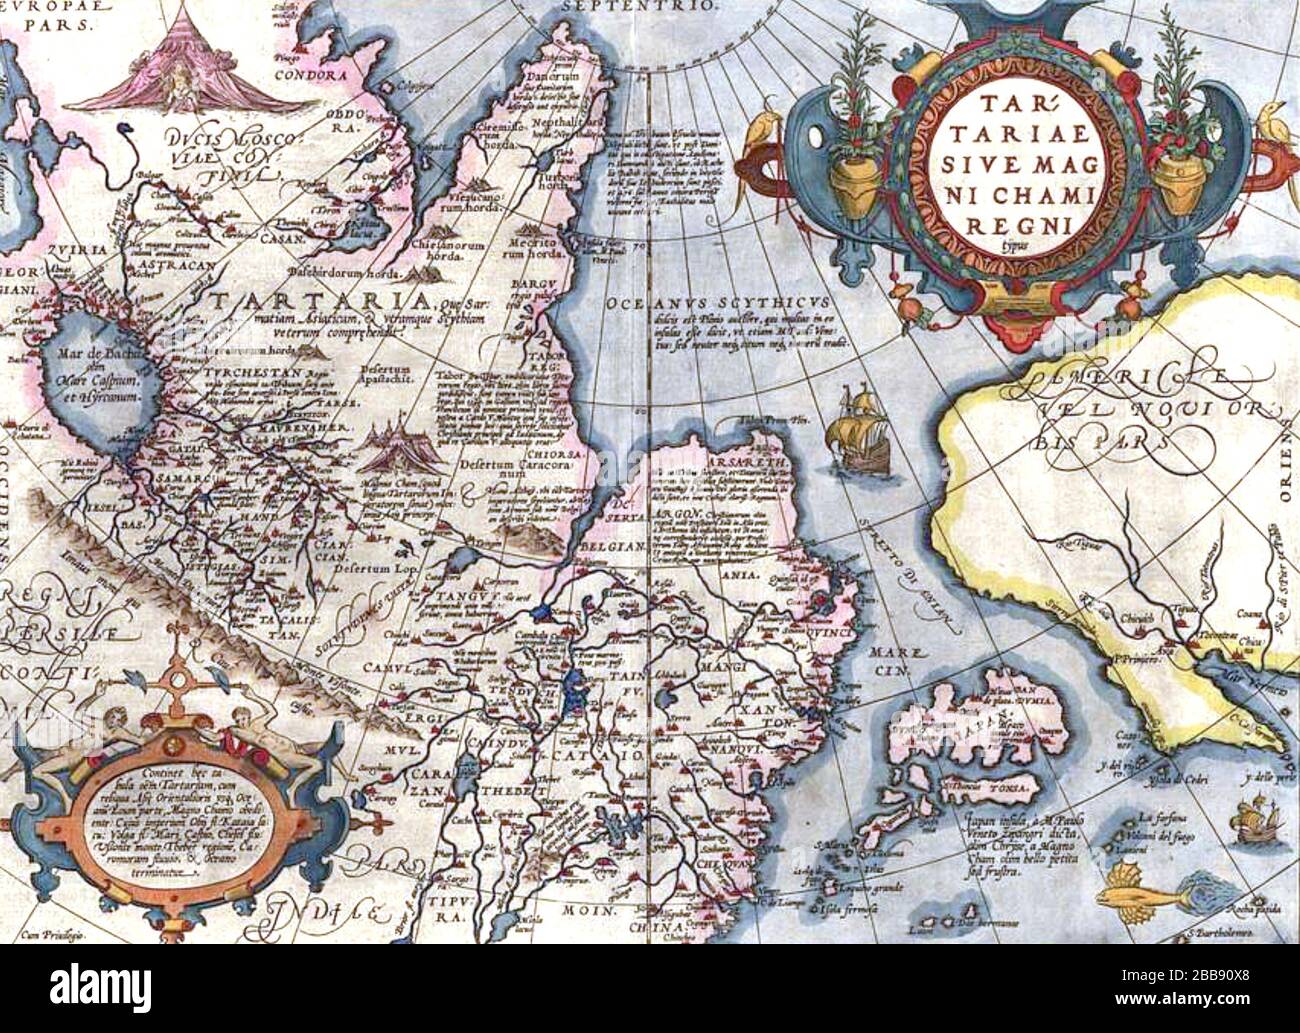 NORD-EST DE LA RUSSIE ET DE L'ALASKA à partir de la carte d'Abraham Ortelius vers 1570 Banque D'Images